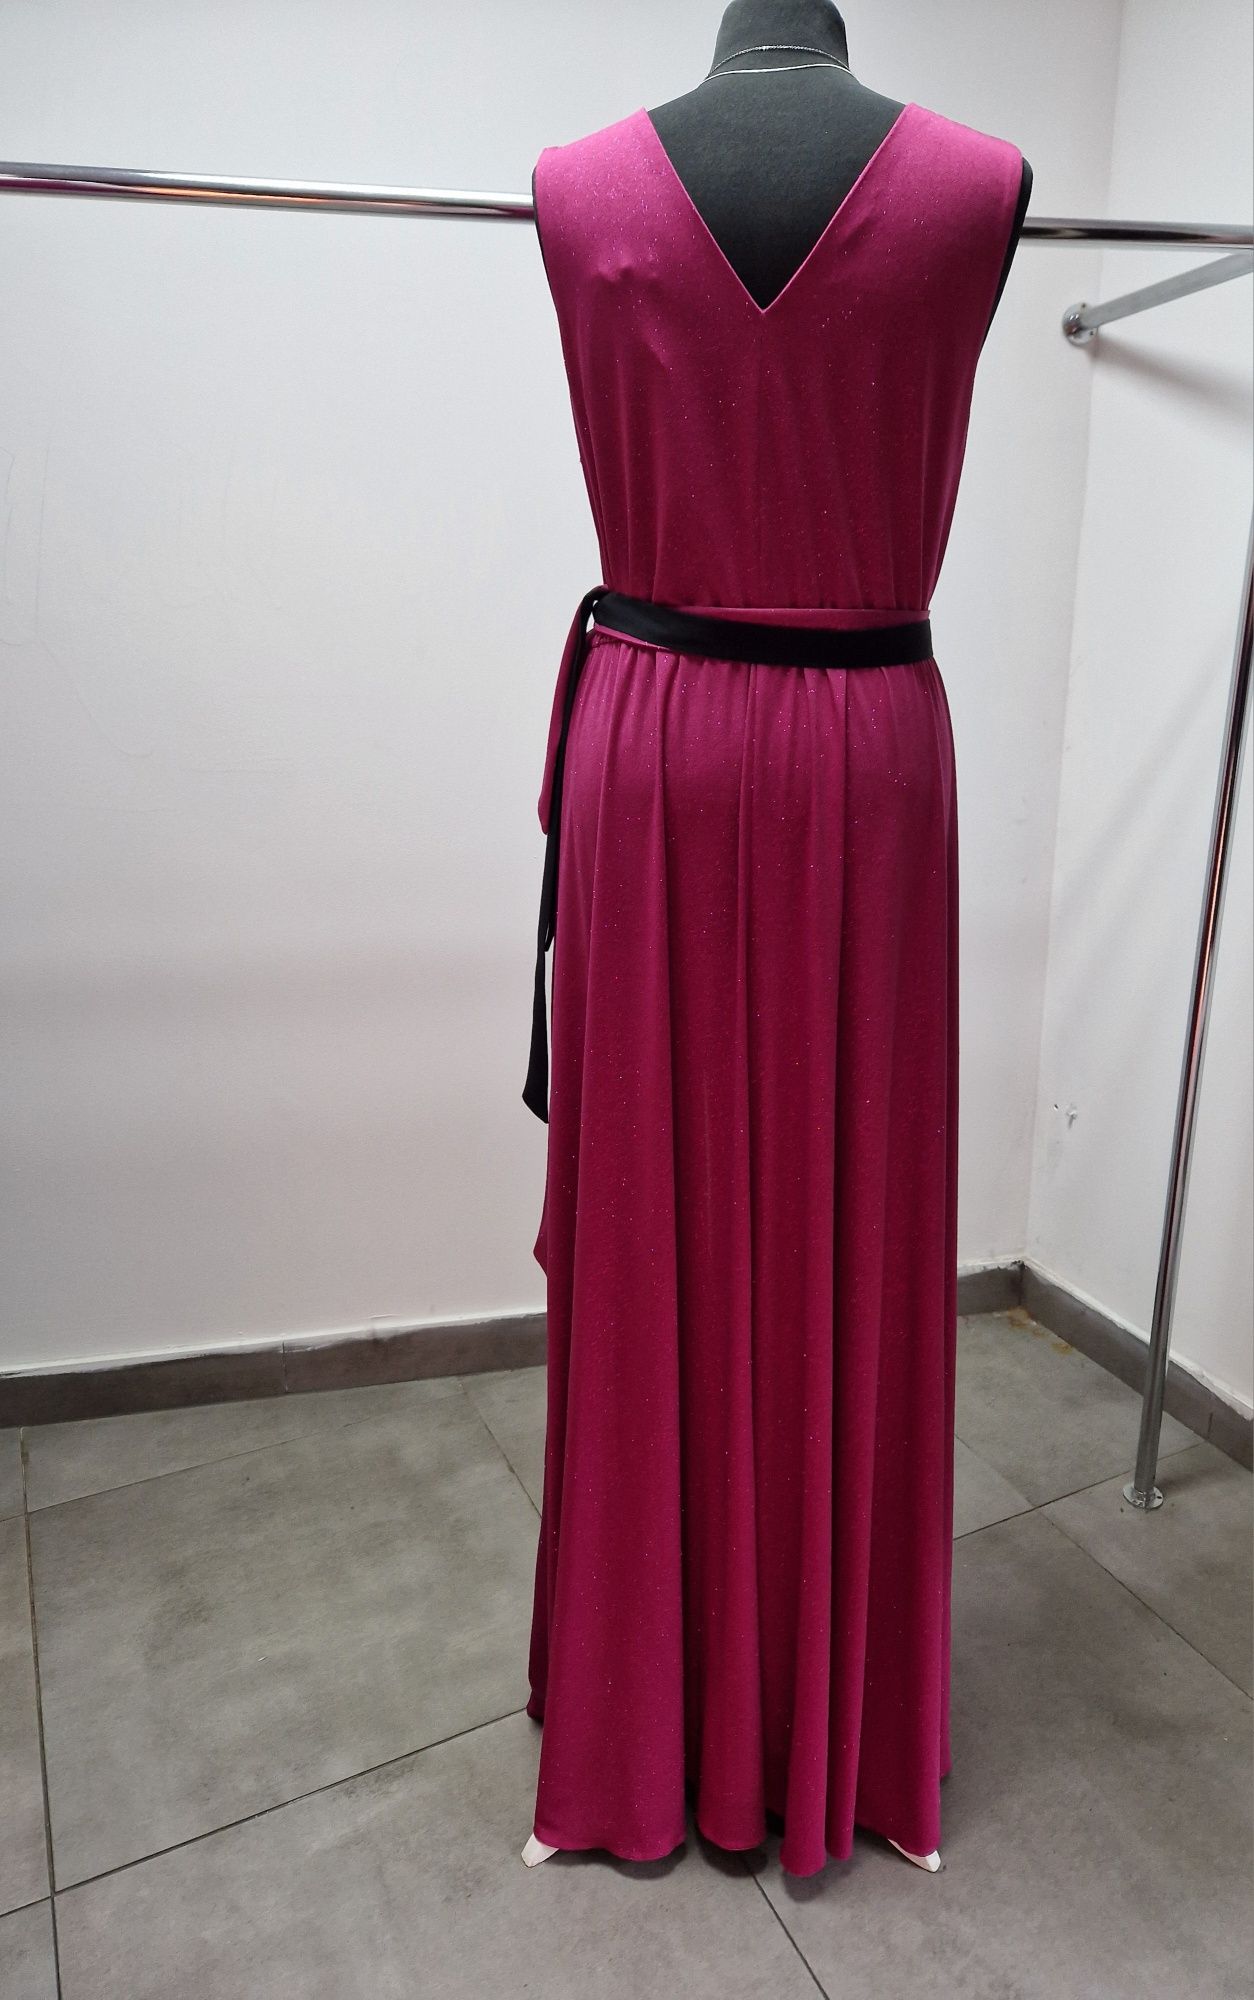 Fantastyczna sukienka Salma, uroczystości, wesela, XL